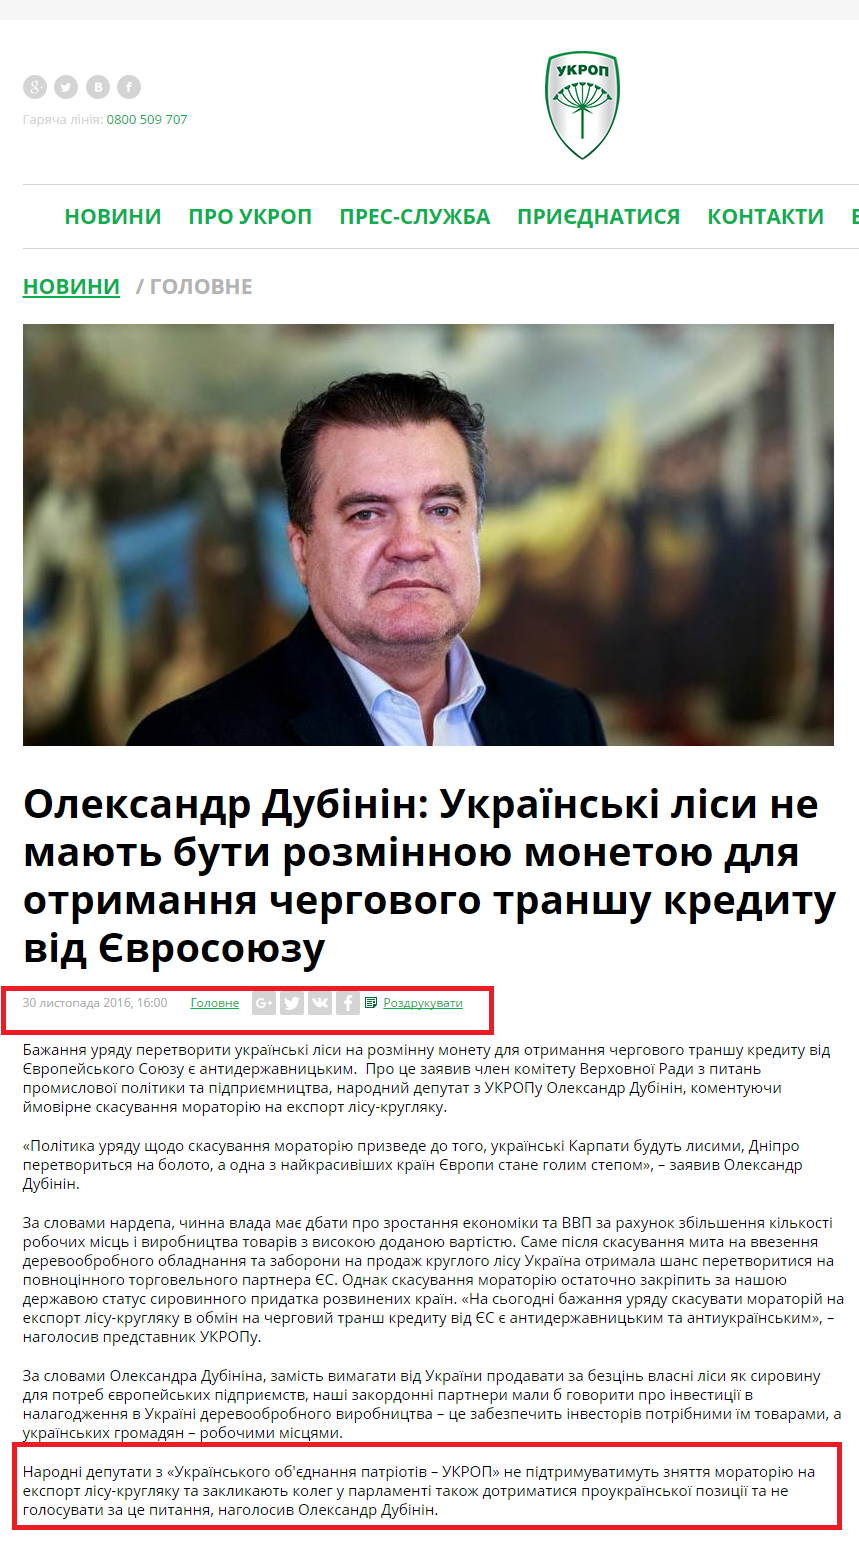 http://ukrop.com.ua/uk/news/central/4178-oleksandr-dubinin-ukrayinski-lisi-ne-mayut-buti-rozminnoyu-monetoyu-dlya-otrimannya-chergovogo-transhu-kreditu-vid-yevrosoyuzu